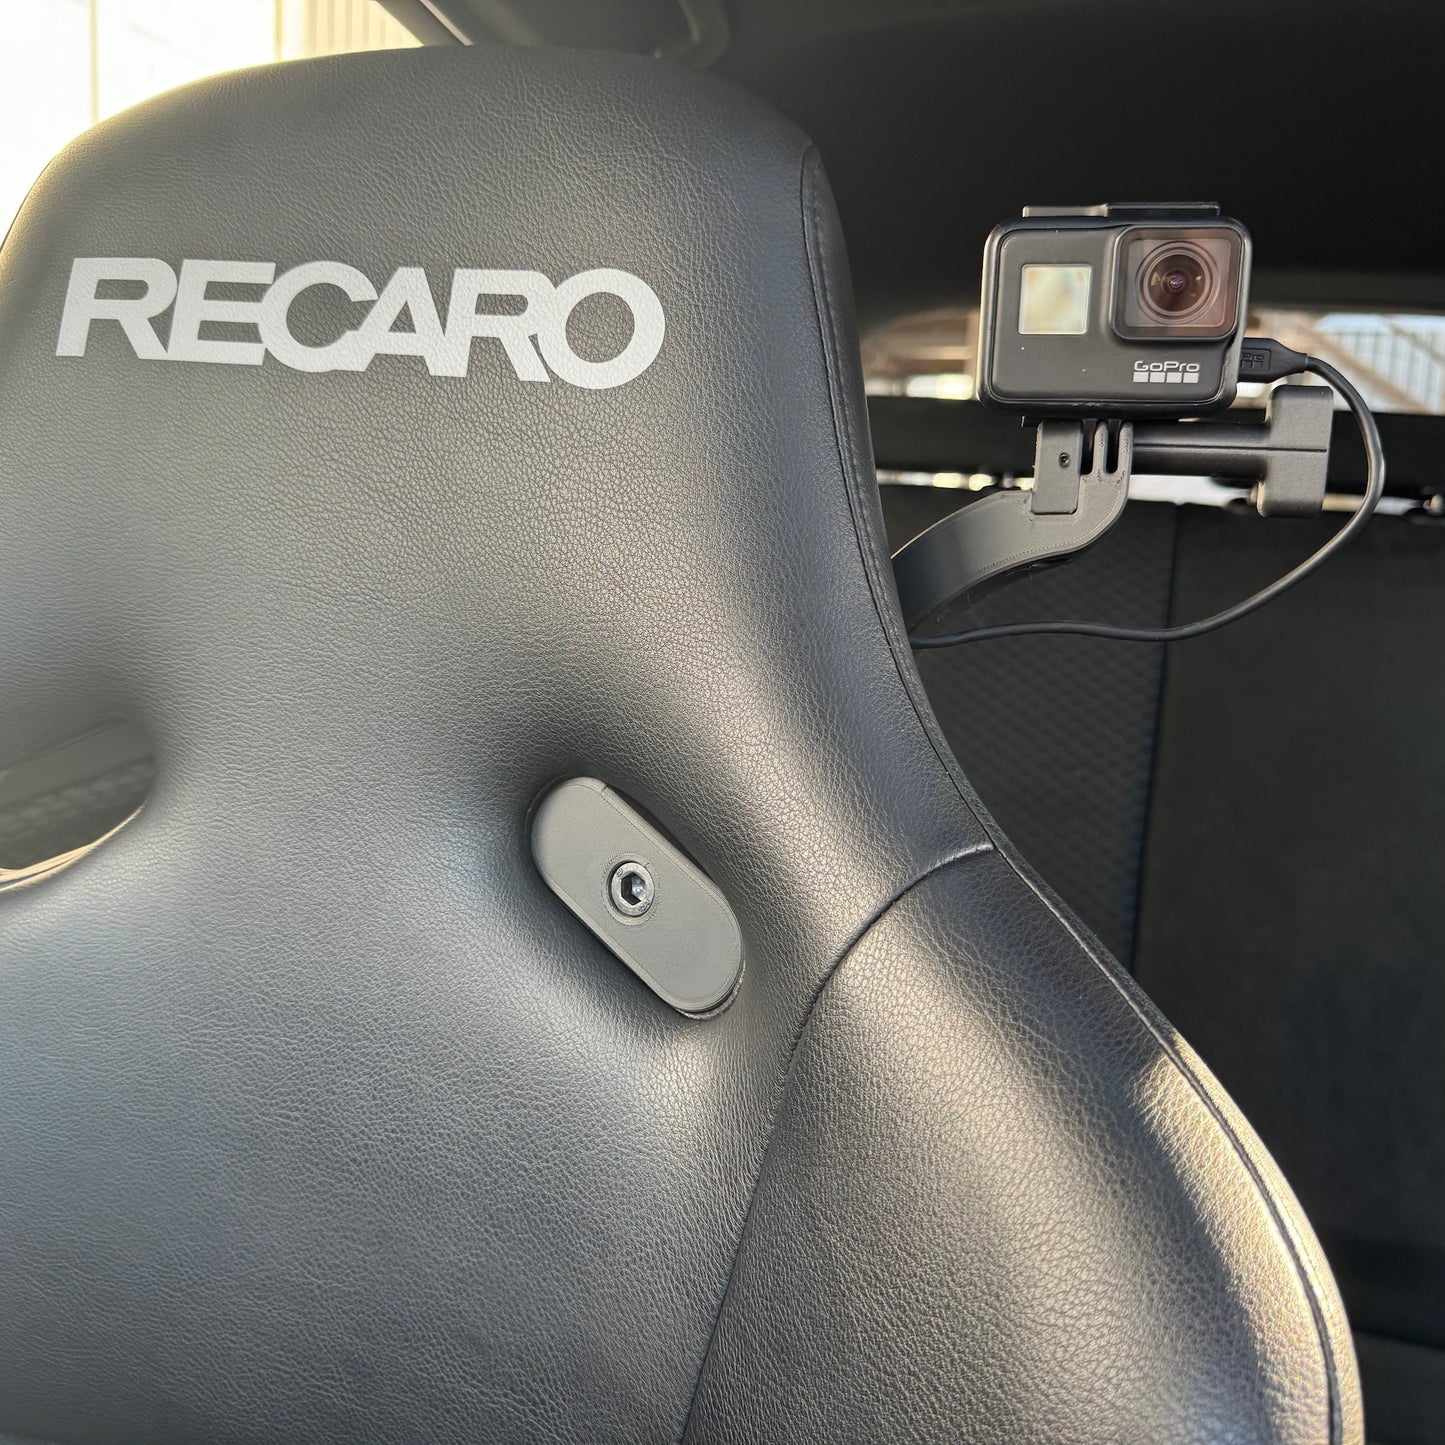 GoPro Mount for Recaro Pole Position & Profi SPG - V3 - for Left Seat